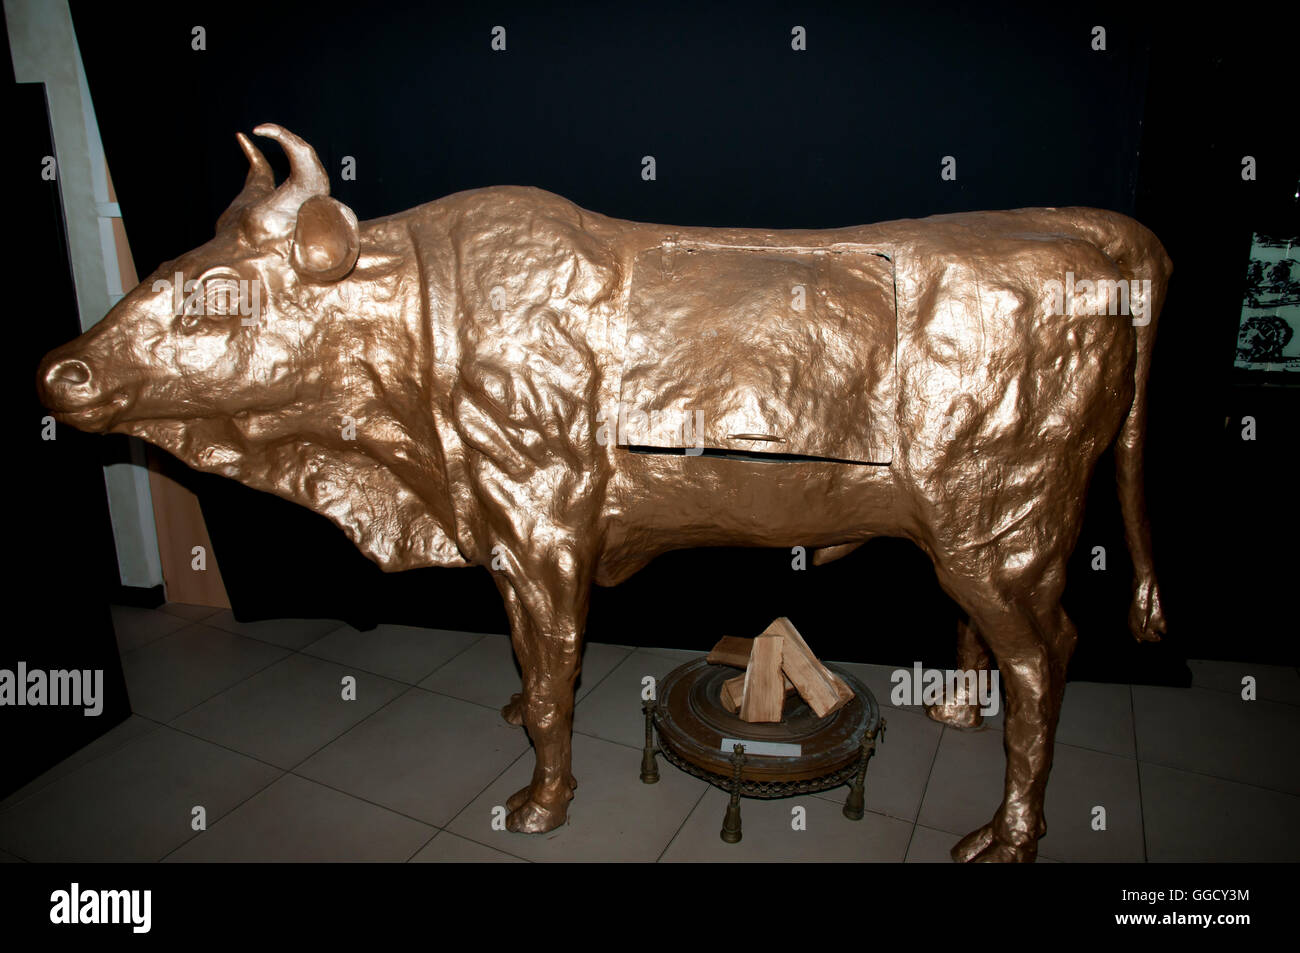 Медный бык купить 1488. Железный бык орудие пыток. Бронзовый бык Фаларида. Сицилийский бык Фаларида пытка. Медный бык орудие пыток.